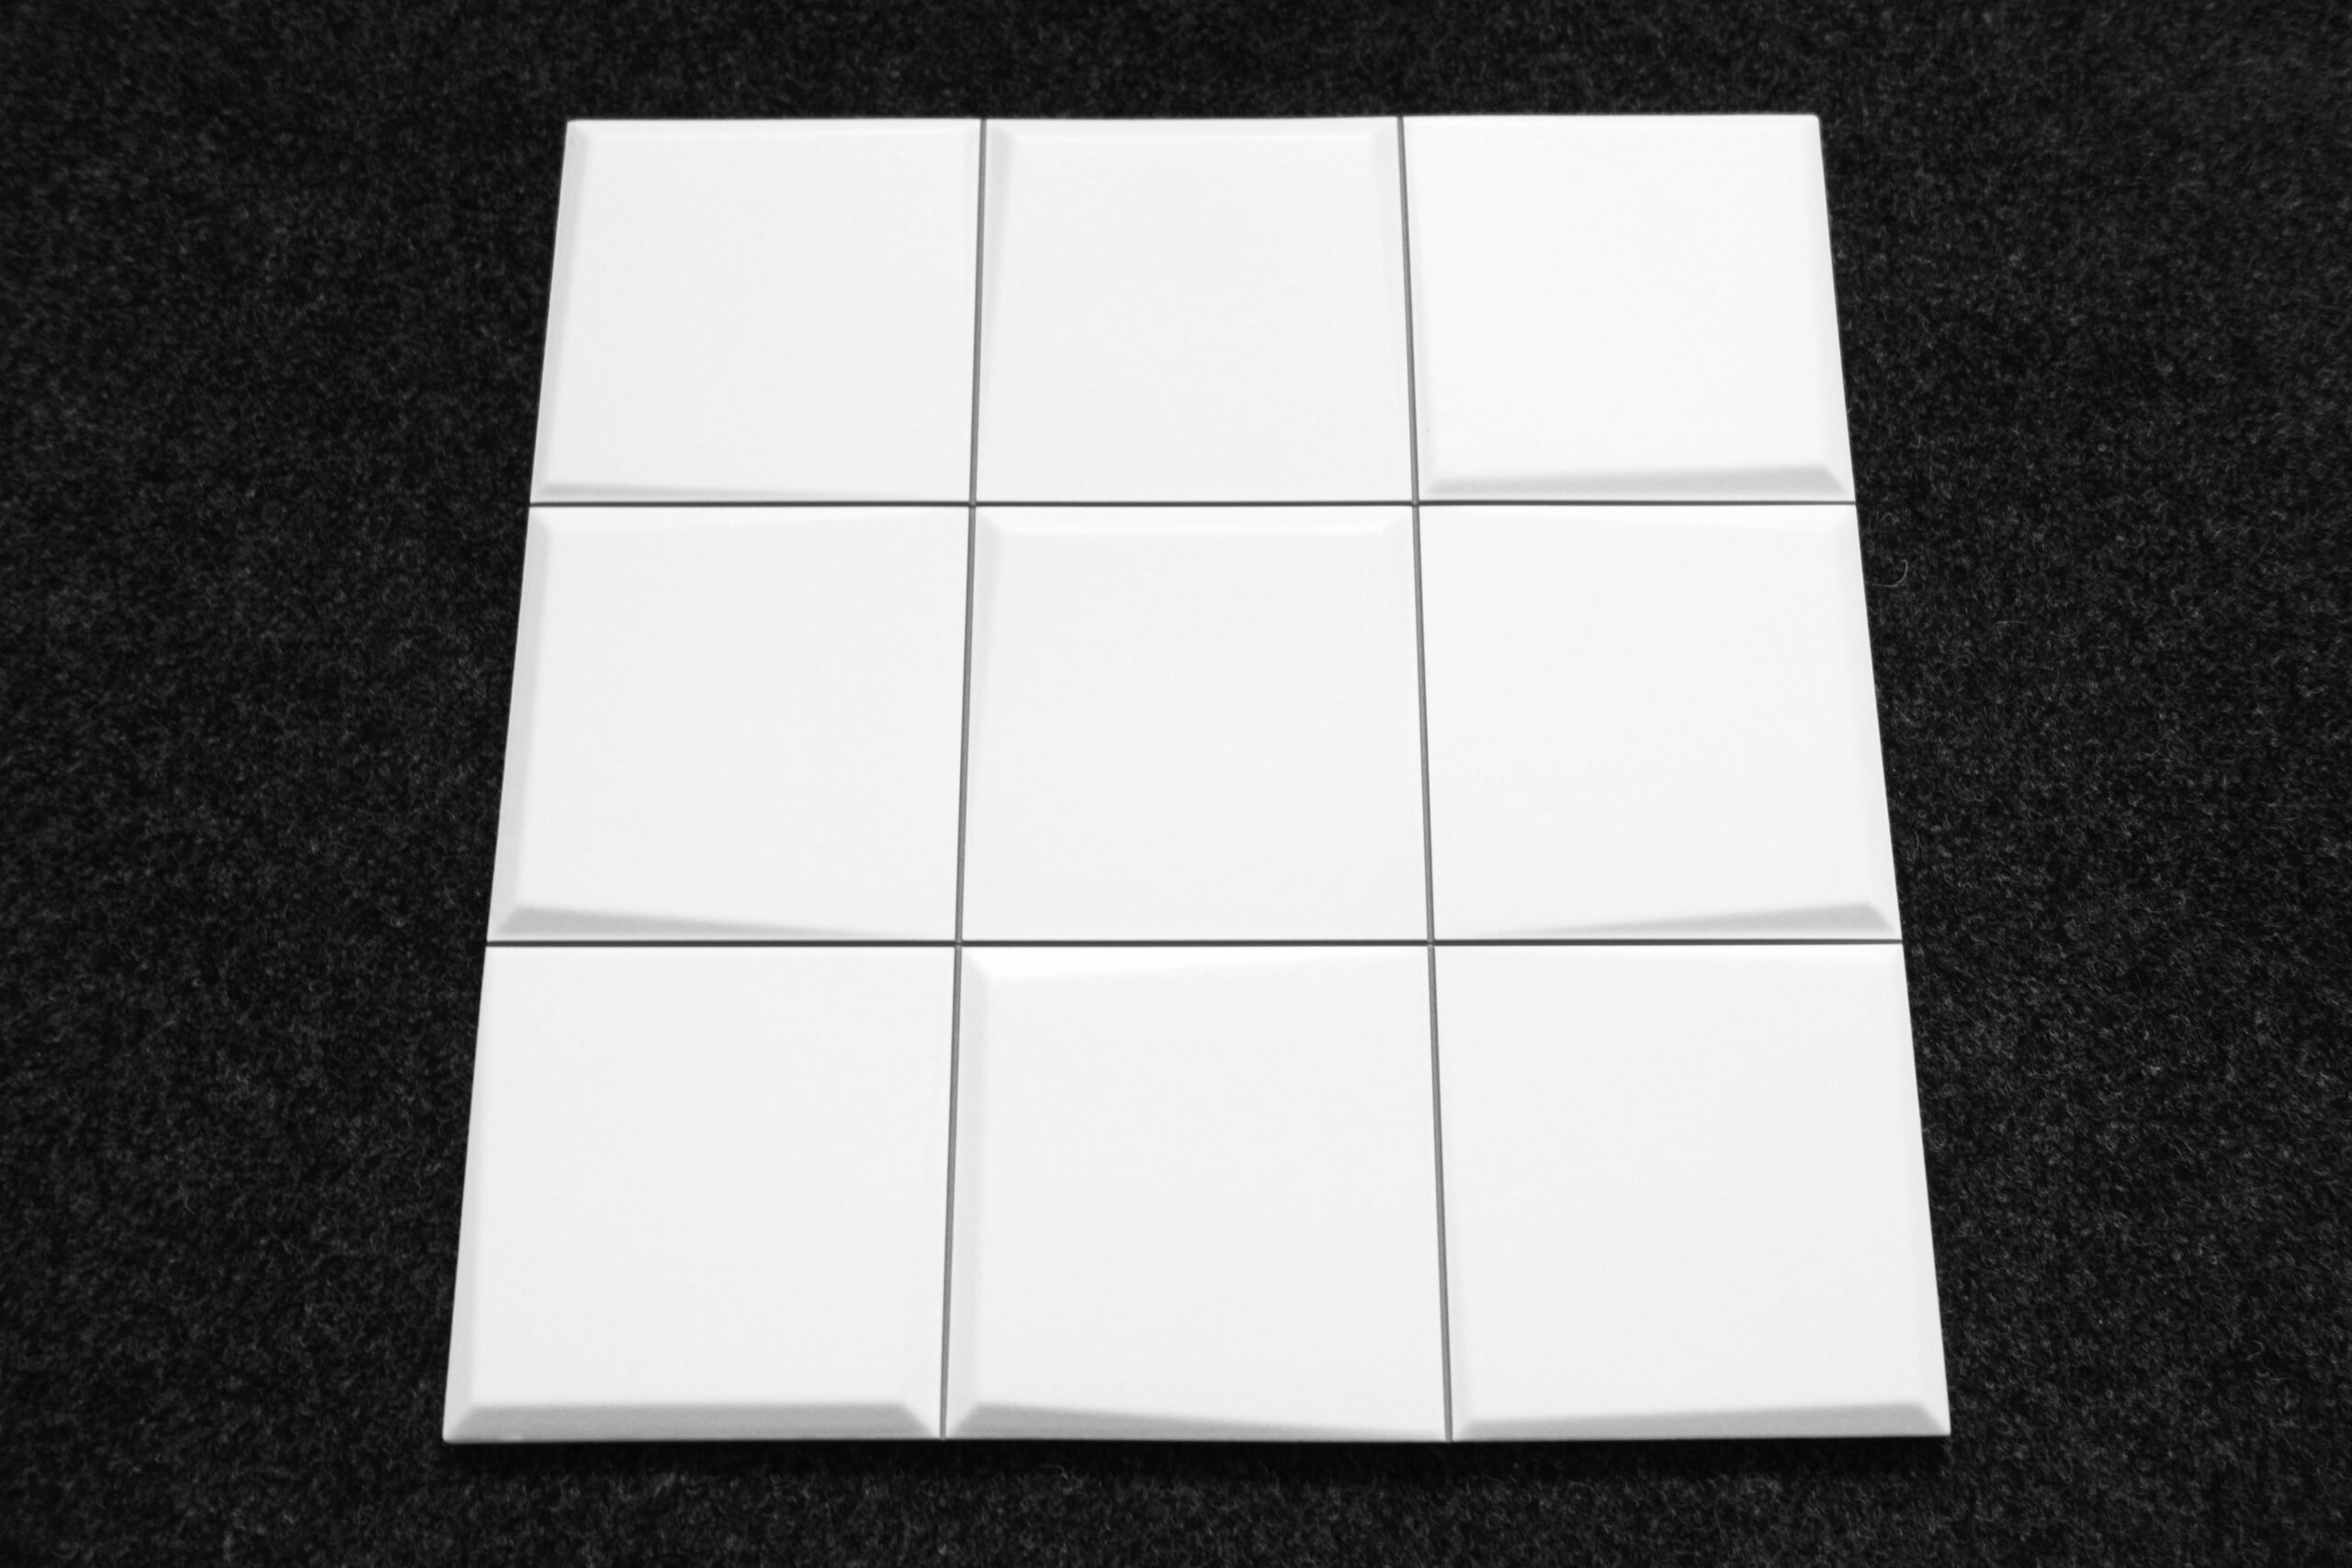 płytki 3D białe PATTERN WHITE BLANCO 33x33